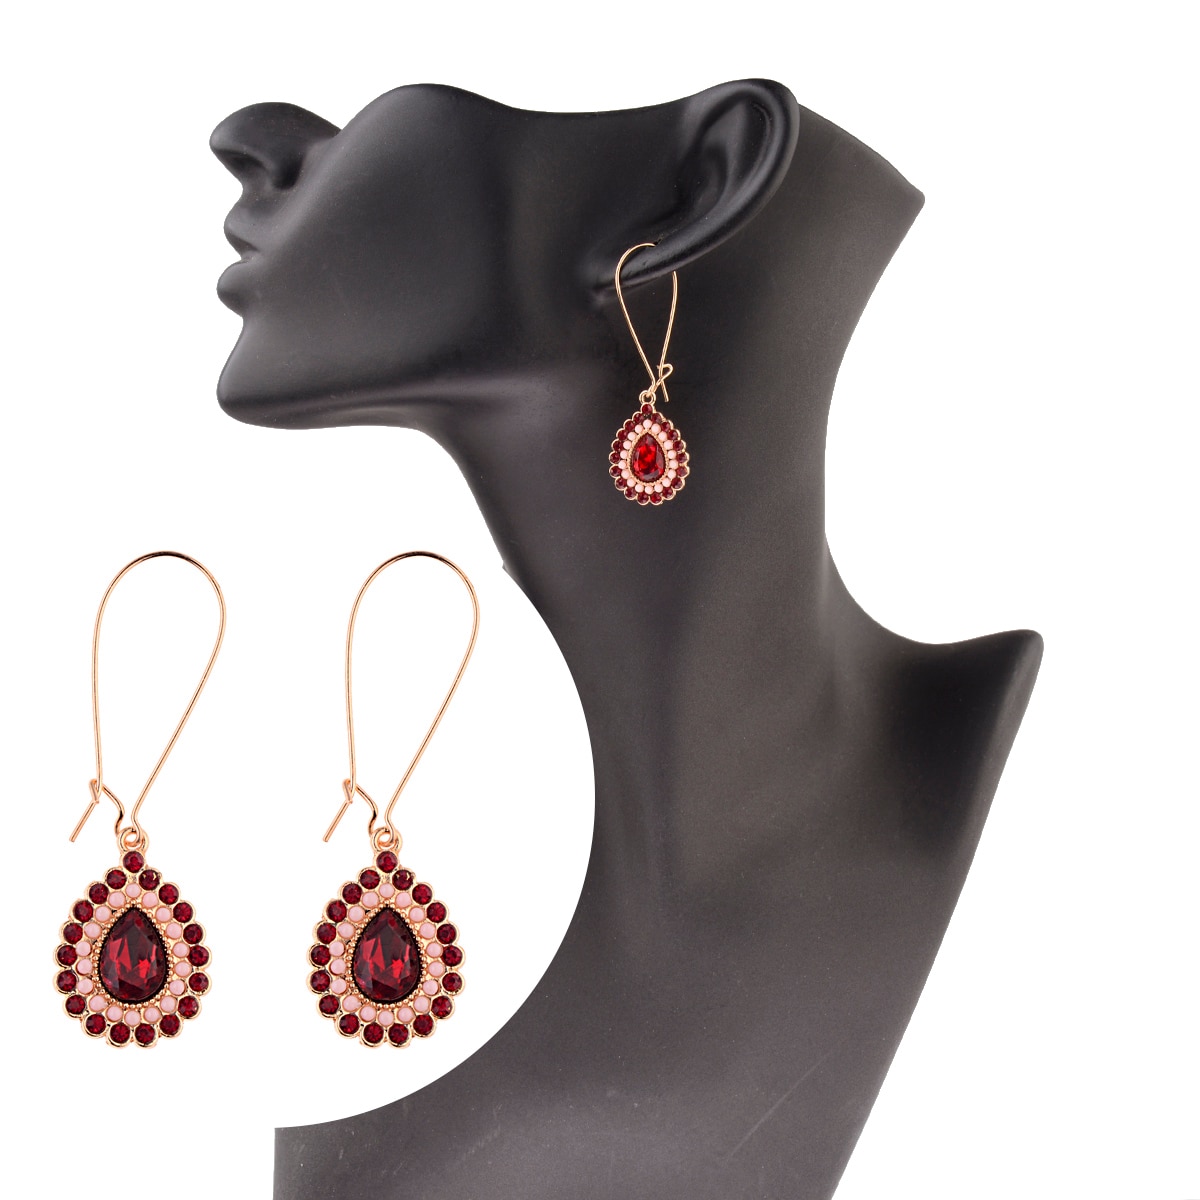 New-Classic-Red-Blue-CZ-Dangle-Earrings-For-Women-Ethnic-Vintage-Bohemian-Water-Drop-Statement-Earri-1005004719282818-7